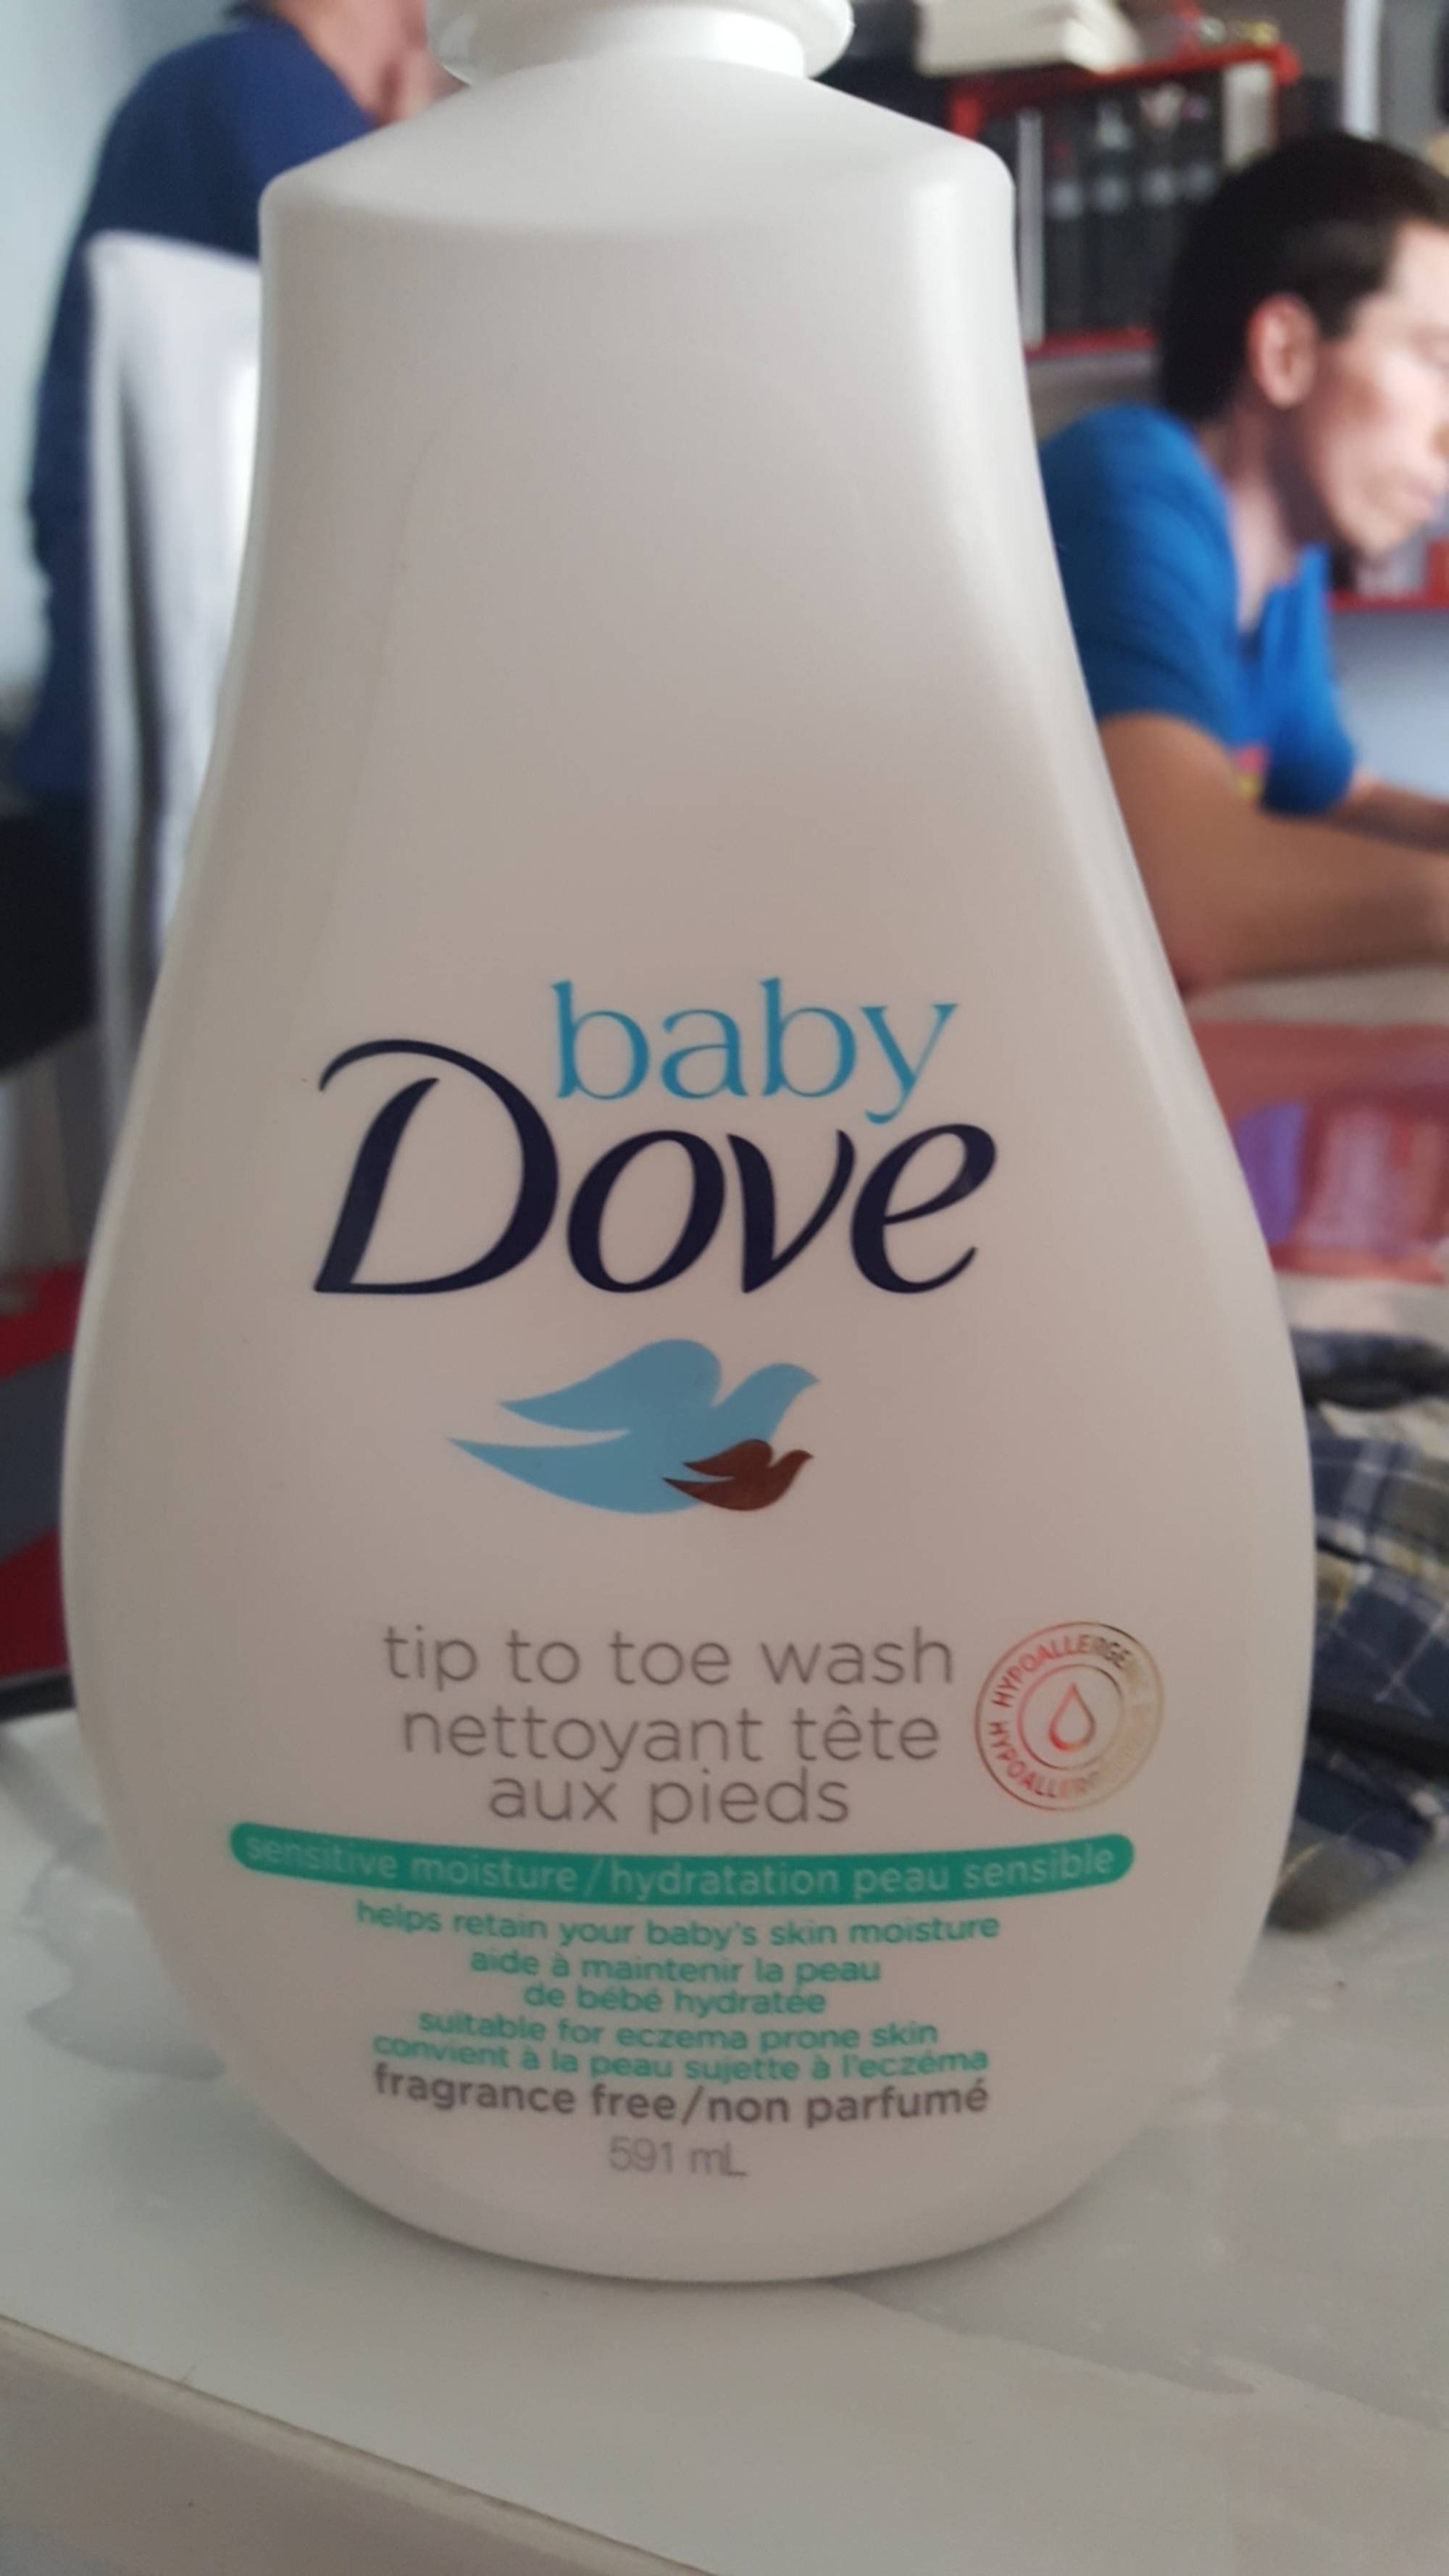 BABY DOVE - Sensitive moisture - Nettoyant tête aux pieds